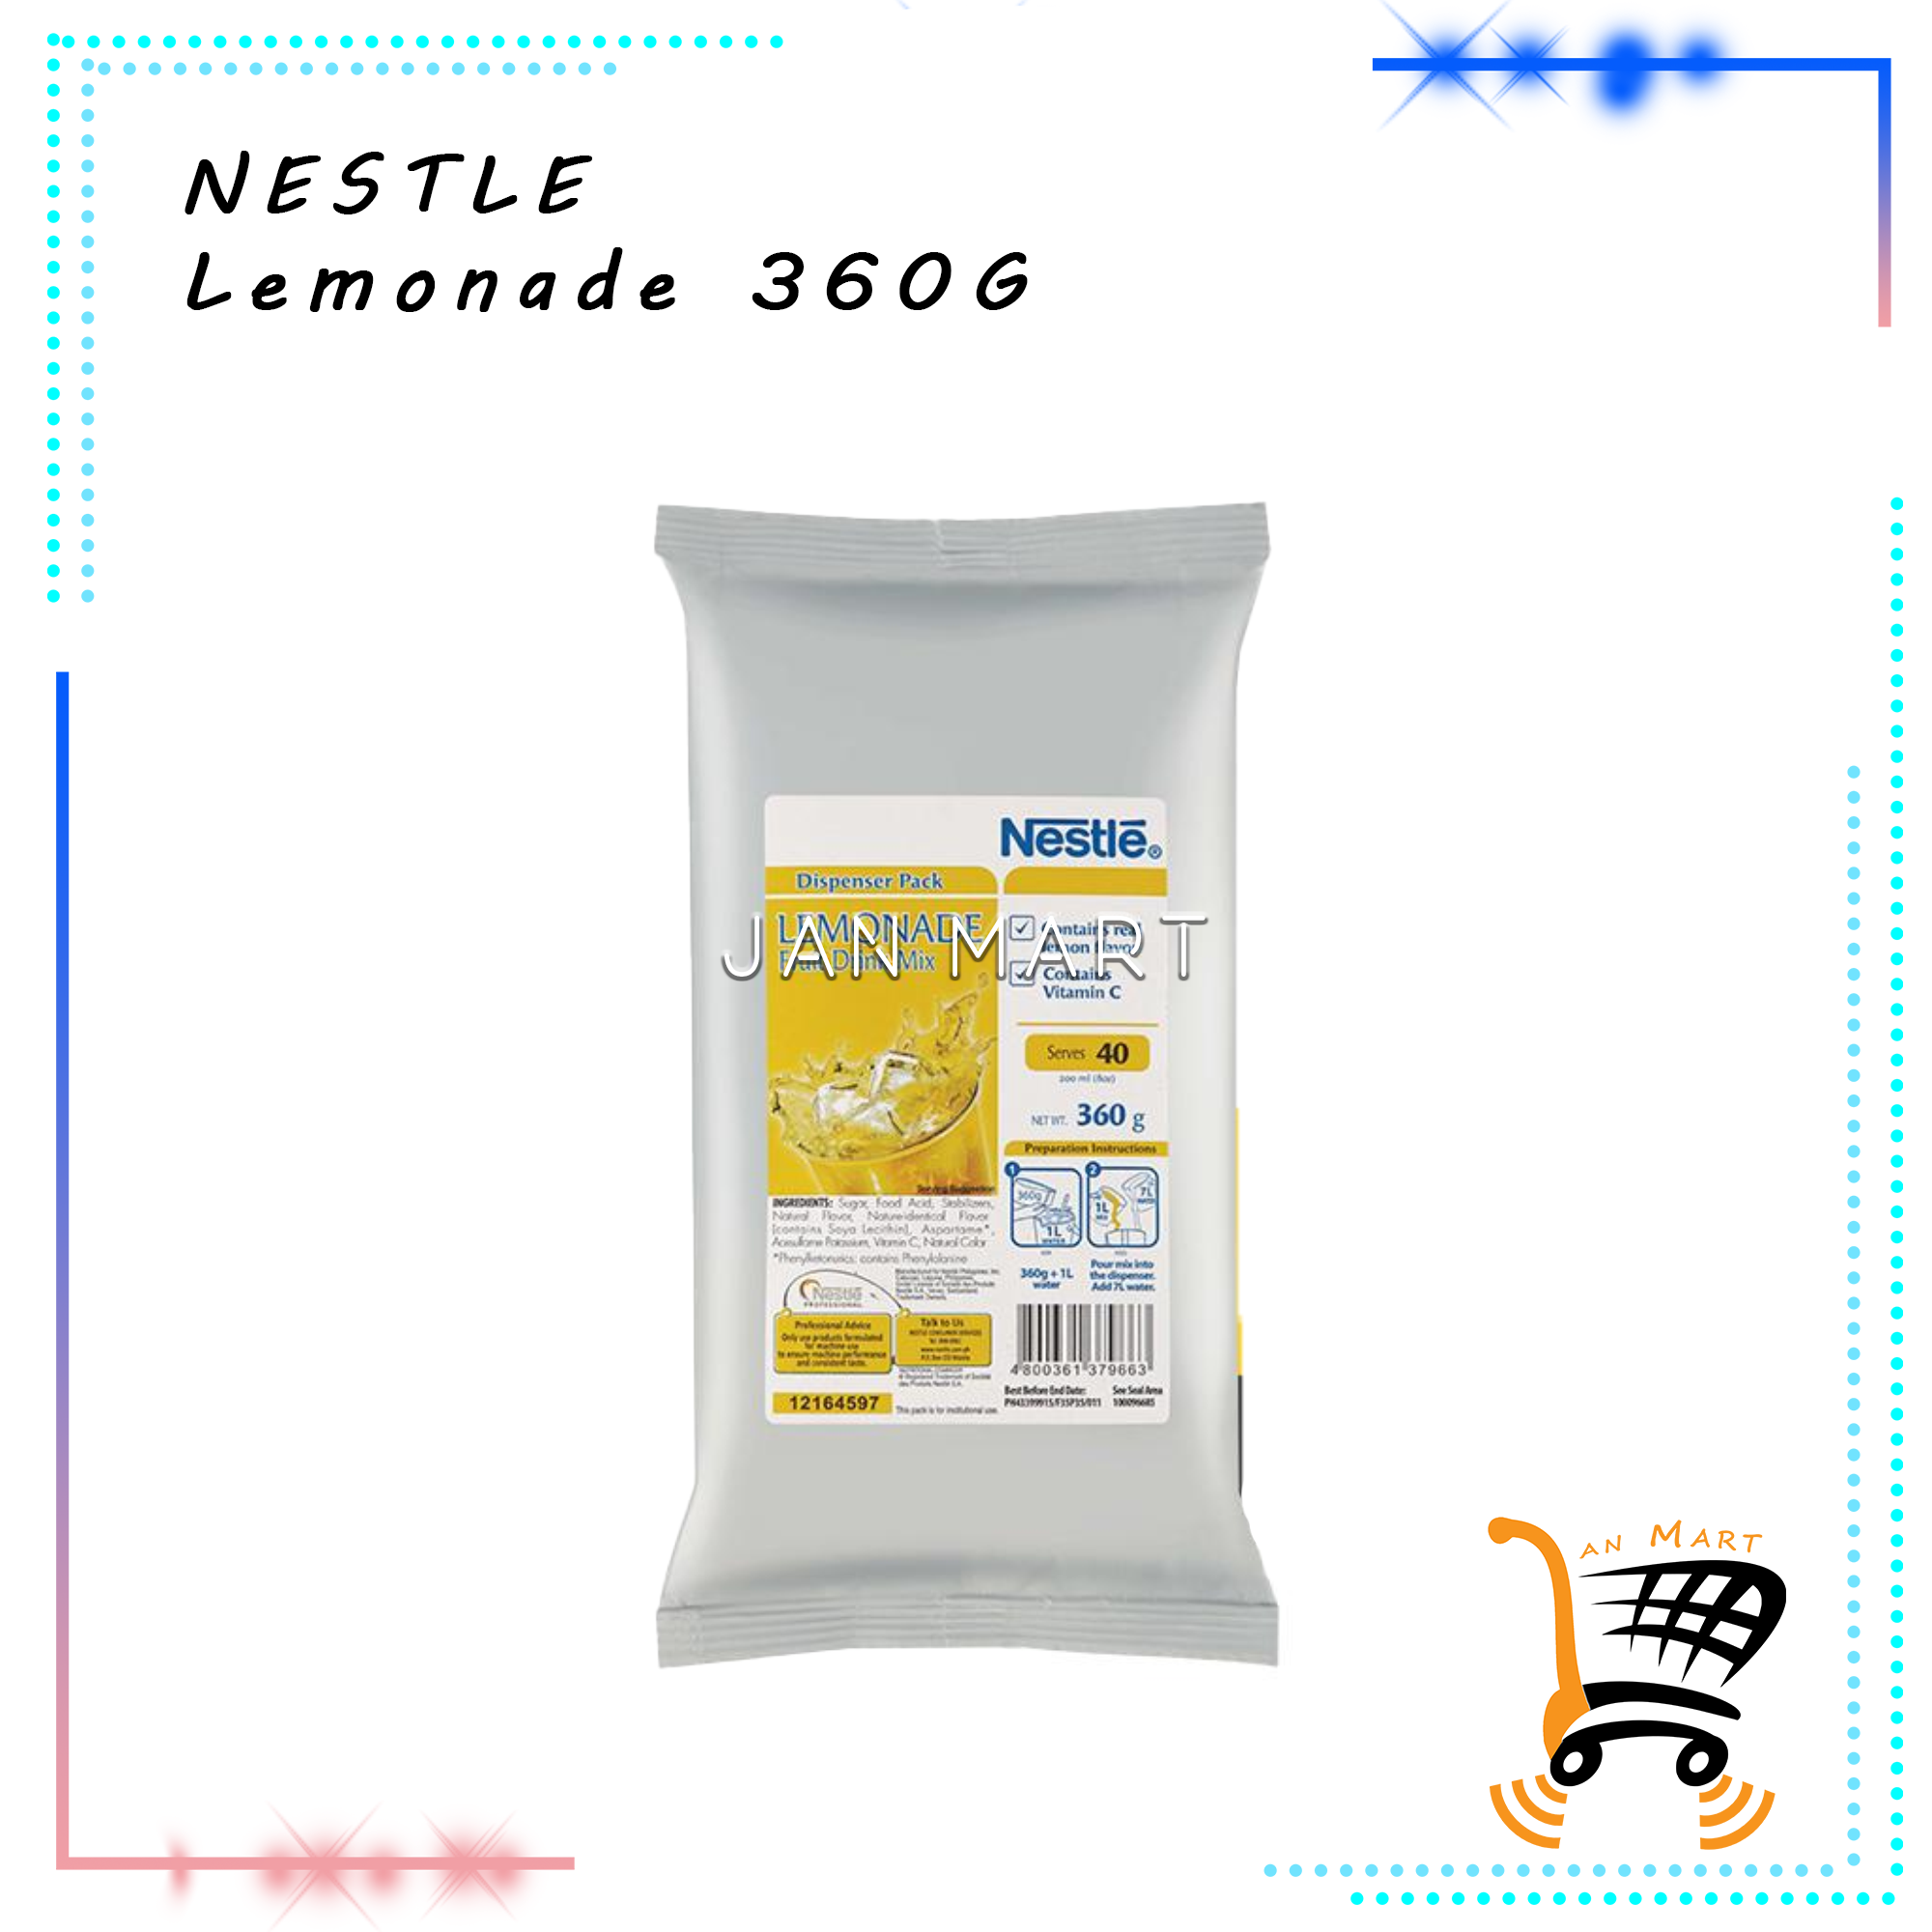 NESTLE Lemonade 360G